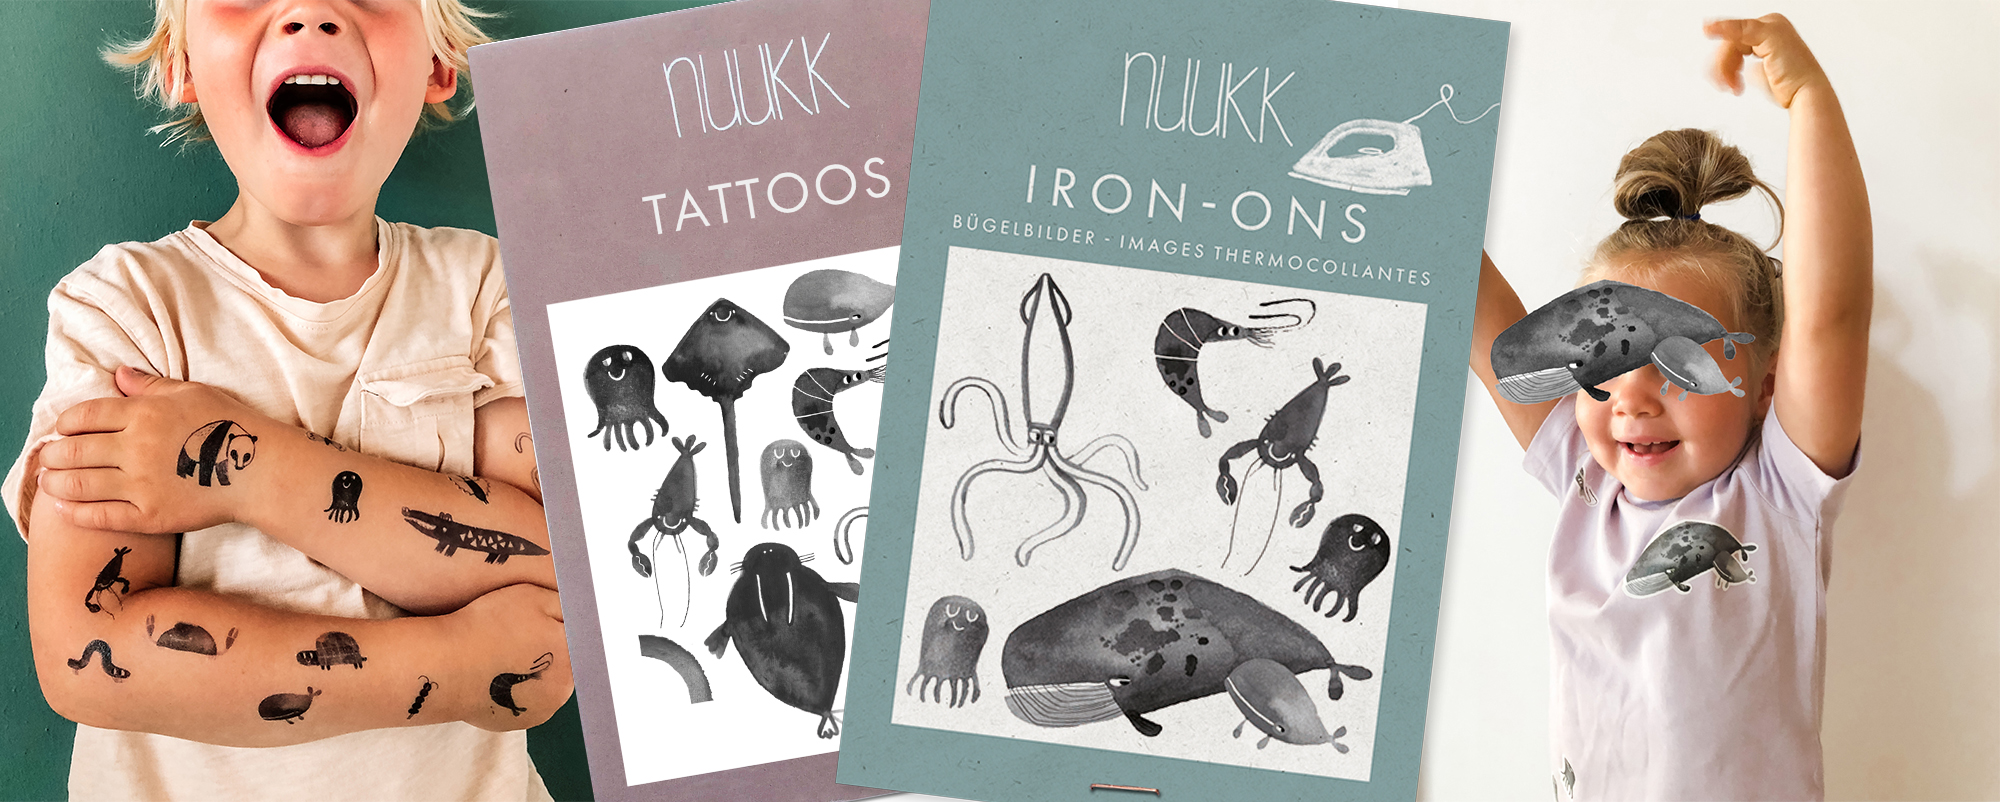 karin-lubenau-tattoos-iron-ons-products-for-nuukk-buegelbilder-illustratorin-cooperation